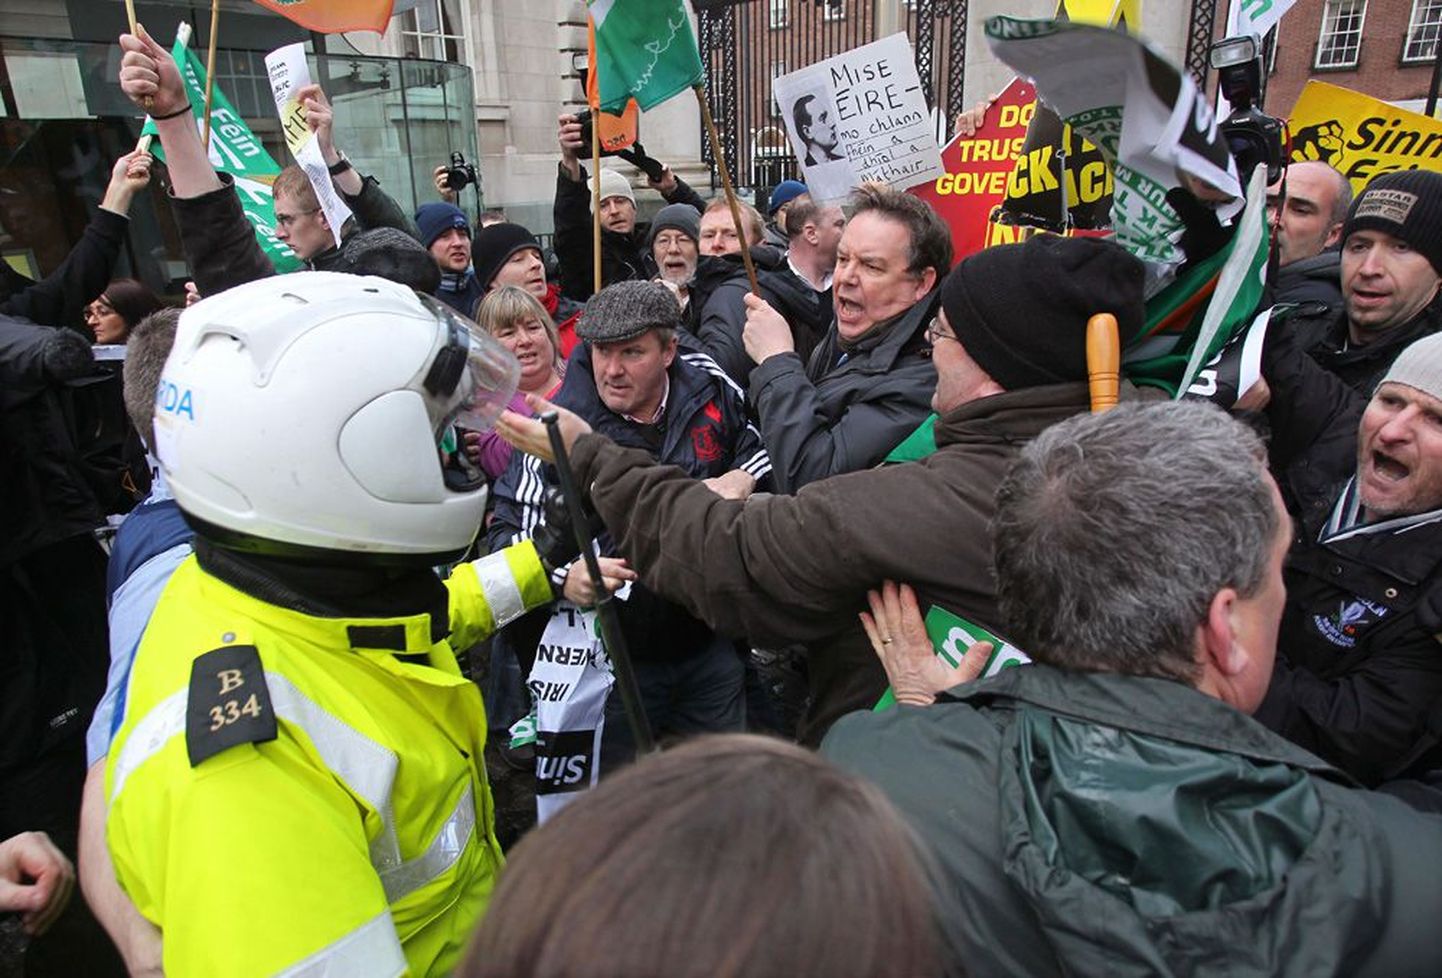 Esmaspäeval läks Dublinis valitsuse poliitika vastu protestijate ja politseinike vahel väikeseks kähmluseks. Meeleavaldajad nõudsid peaminister Brian Coweni  tagasiastumist.